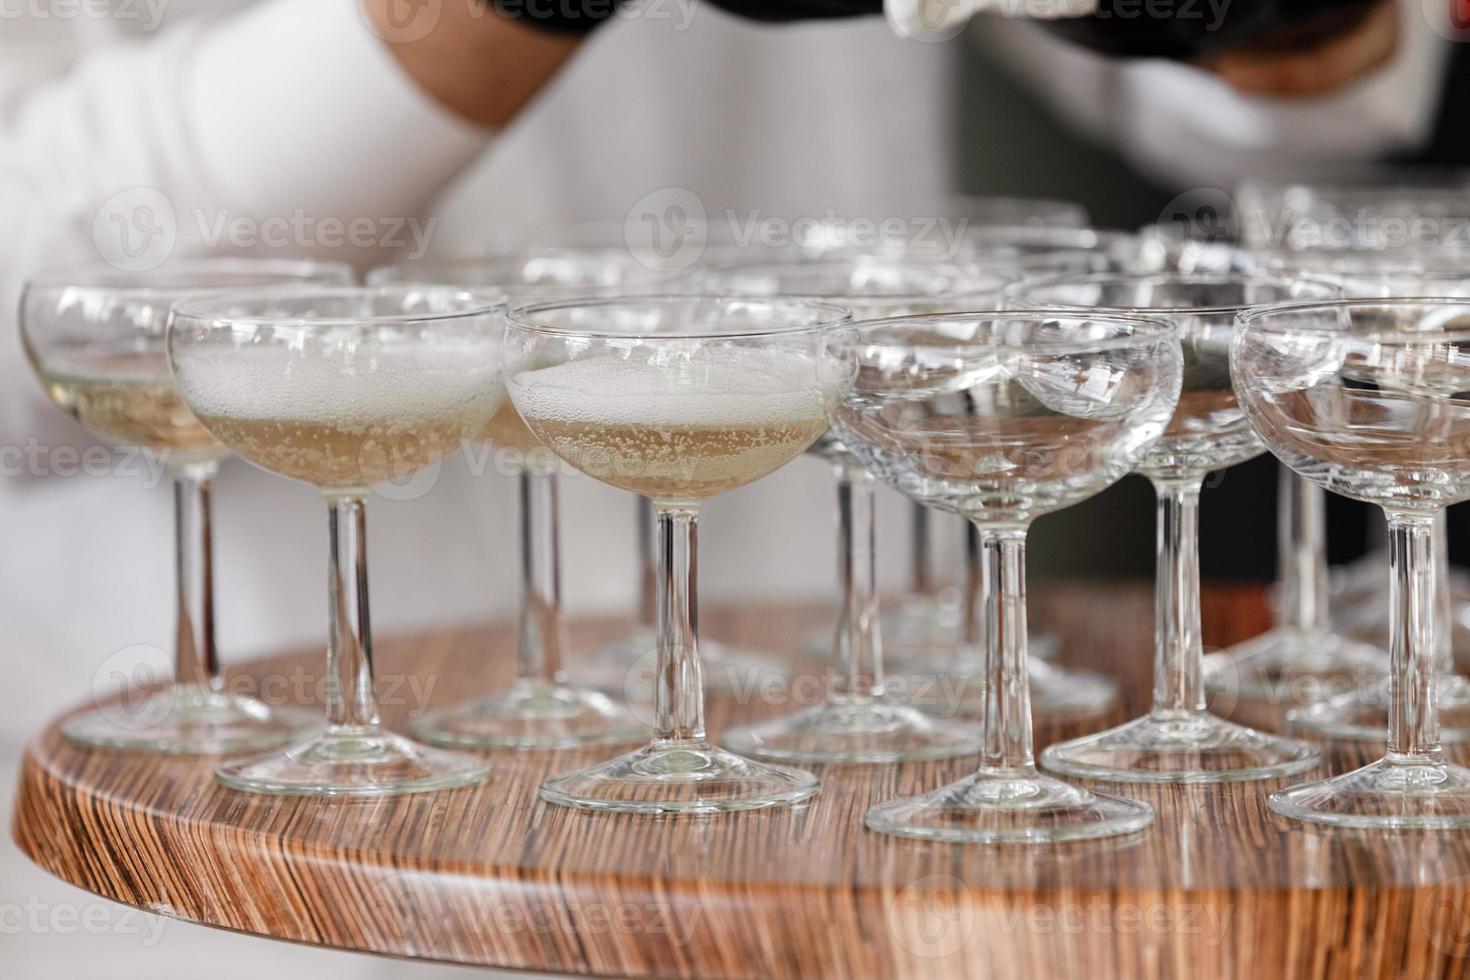 spumante, champagne in bicchieri sul tavolo di legno. cameriere in guanti neri versa l'alcol nei bicchieri nel ristorante. messa a fuoco selettiva foto